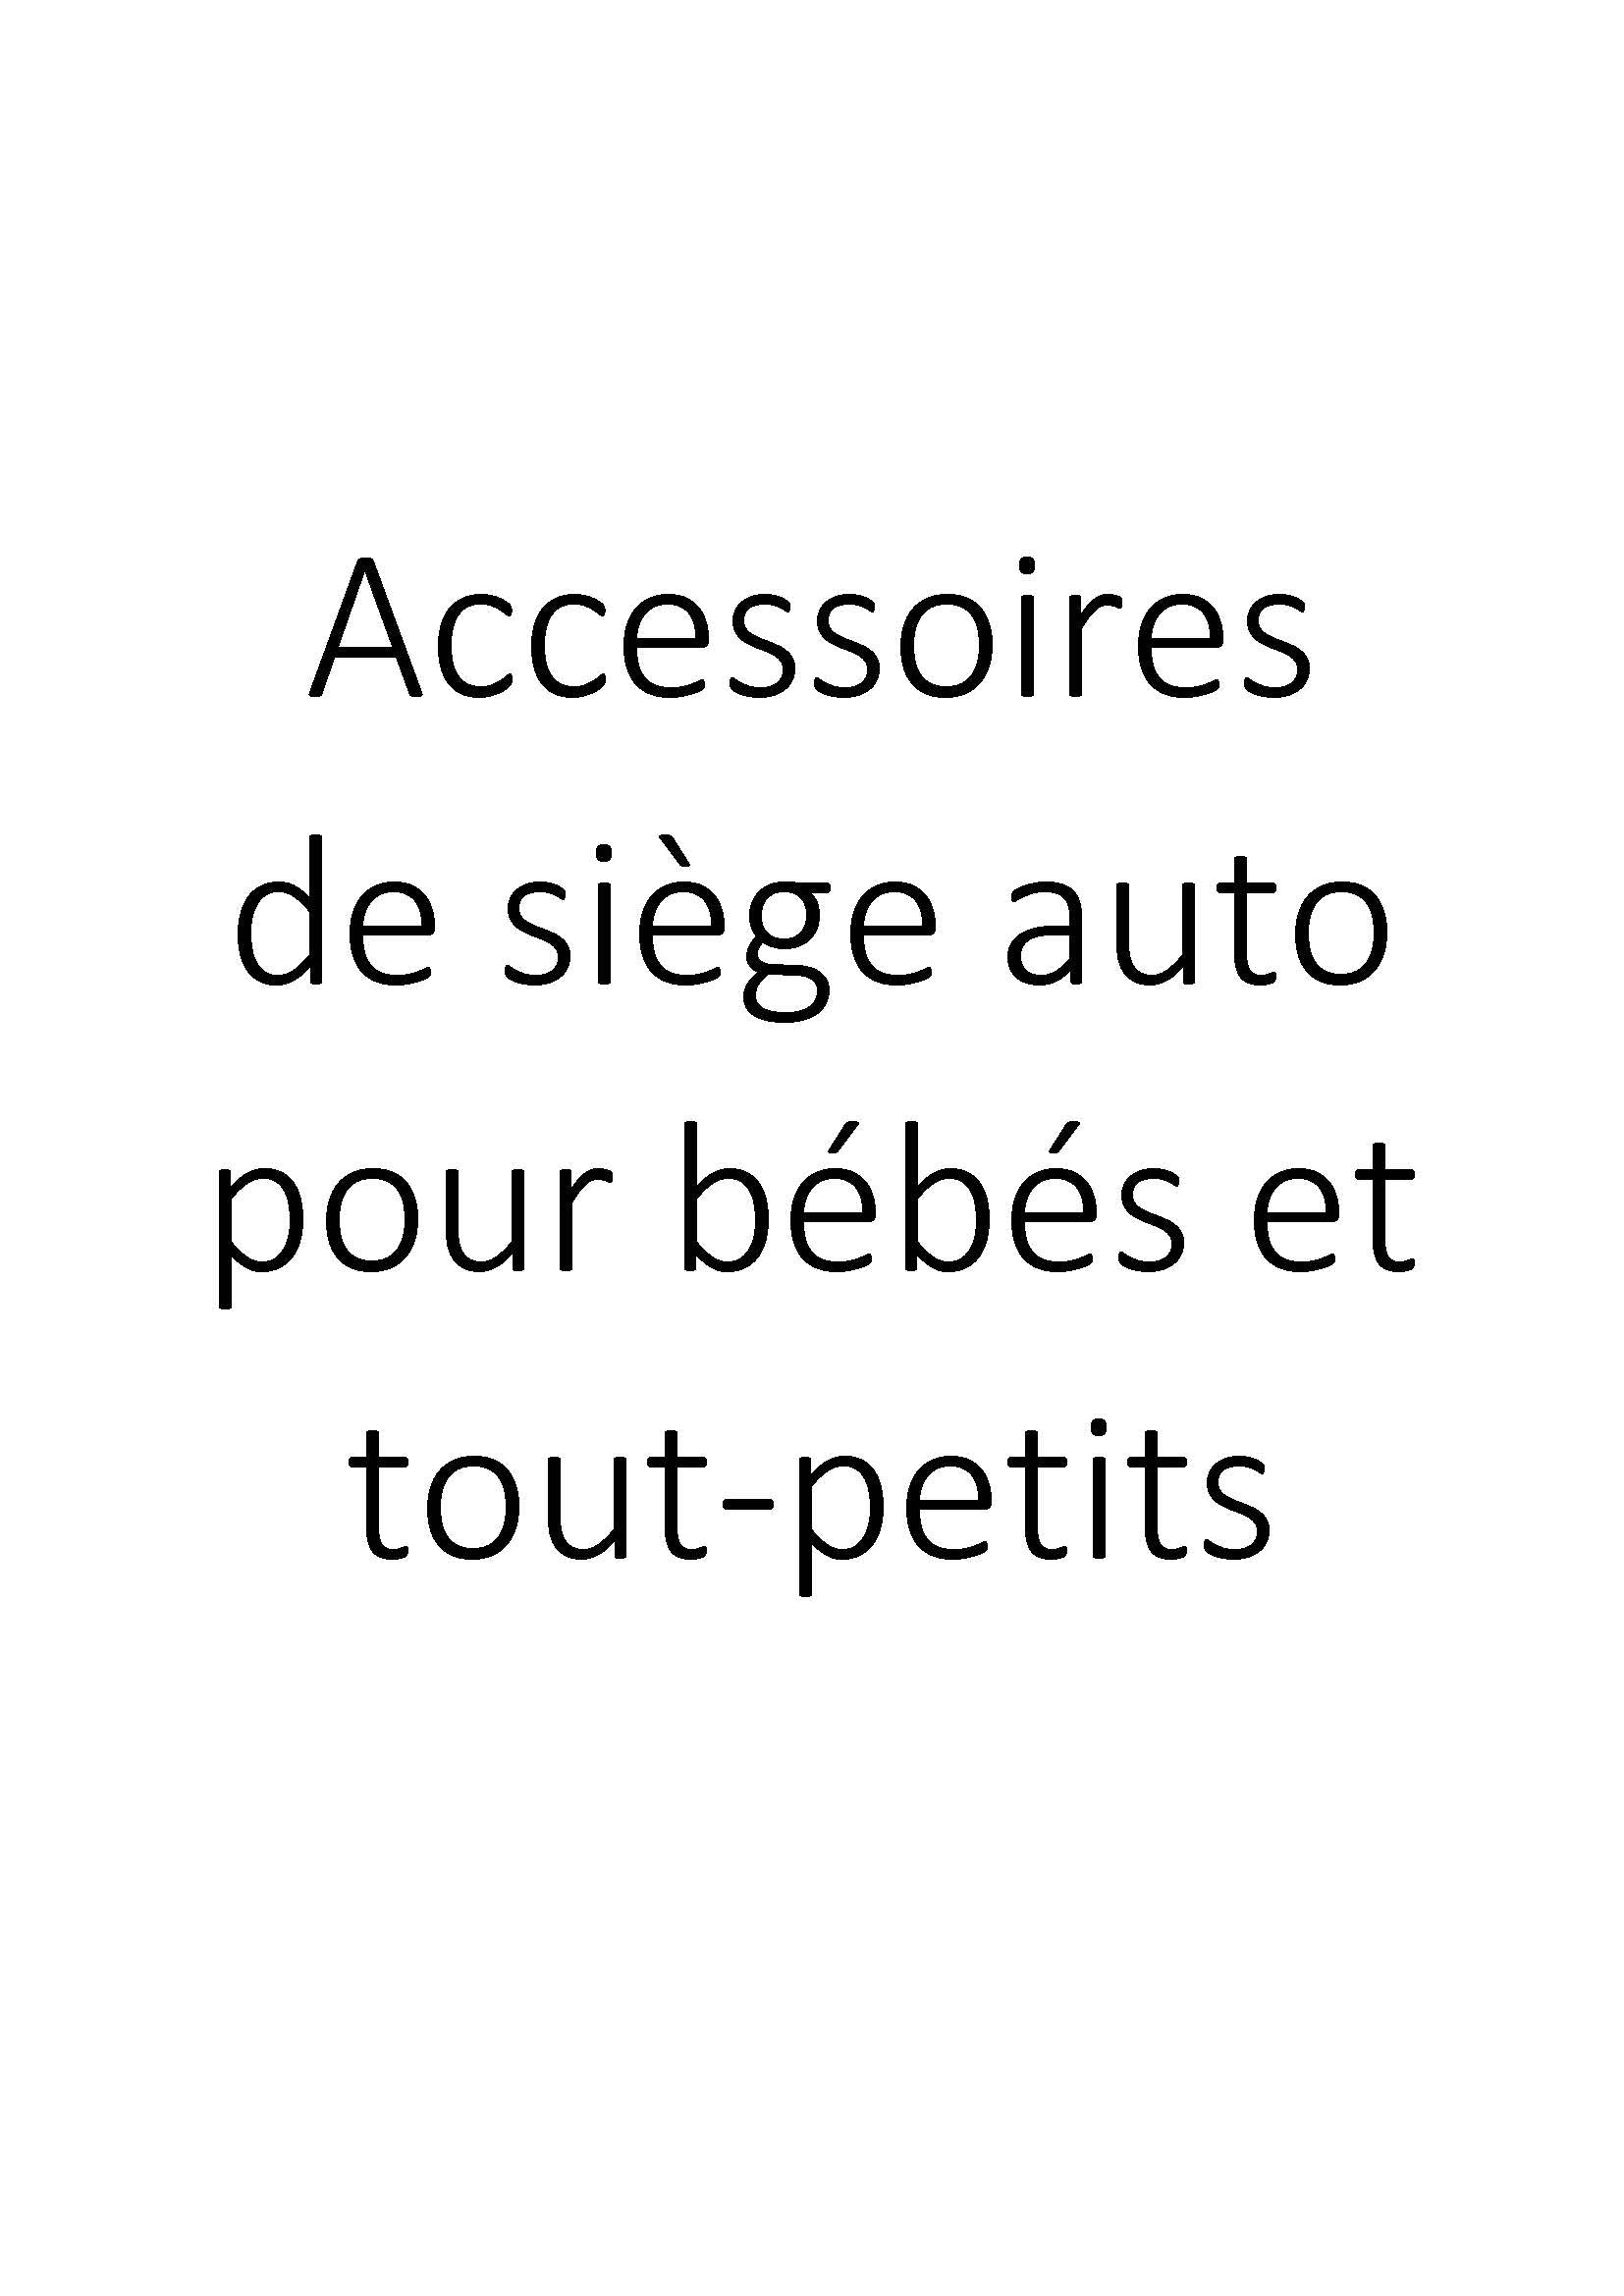 Accessoires de siège auto pour bébés et tout-petits clicktofournisseur.com